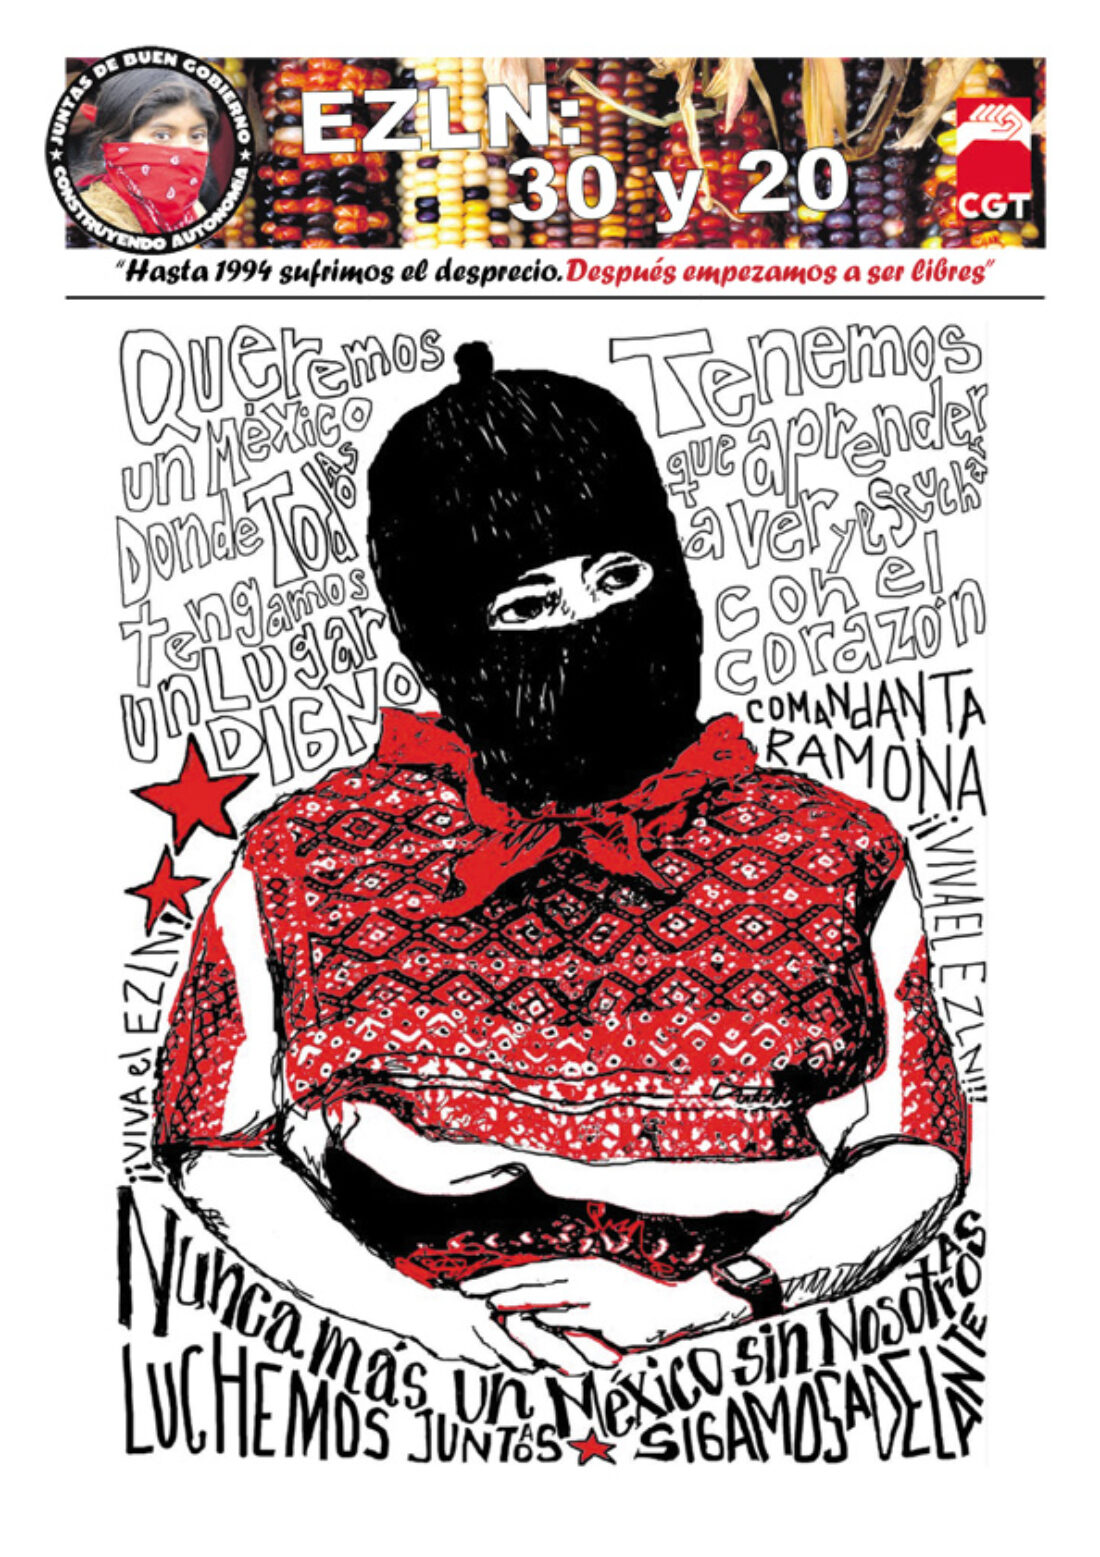 EZLN: 30 y 20 – febrero 2014